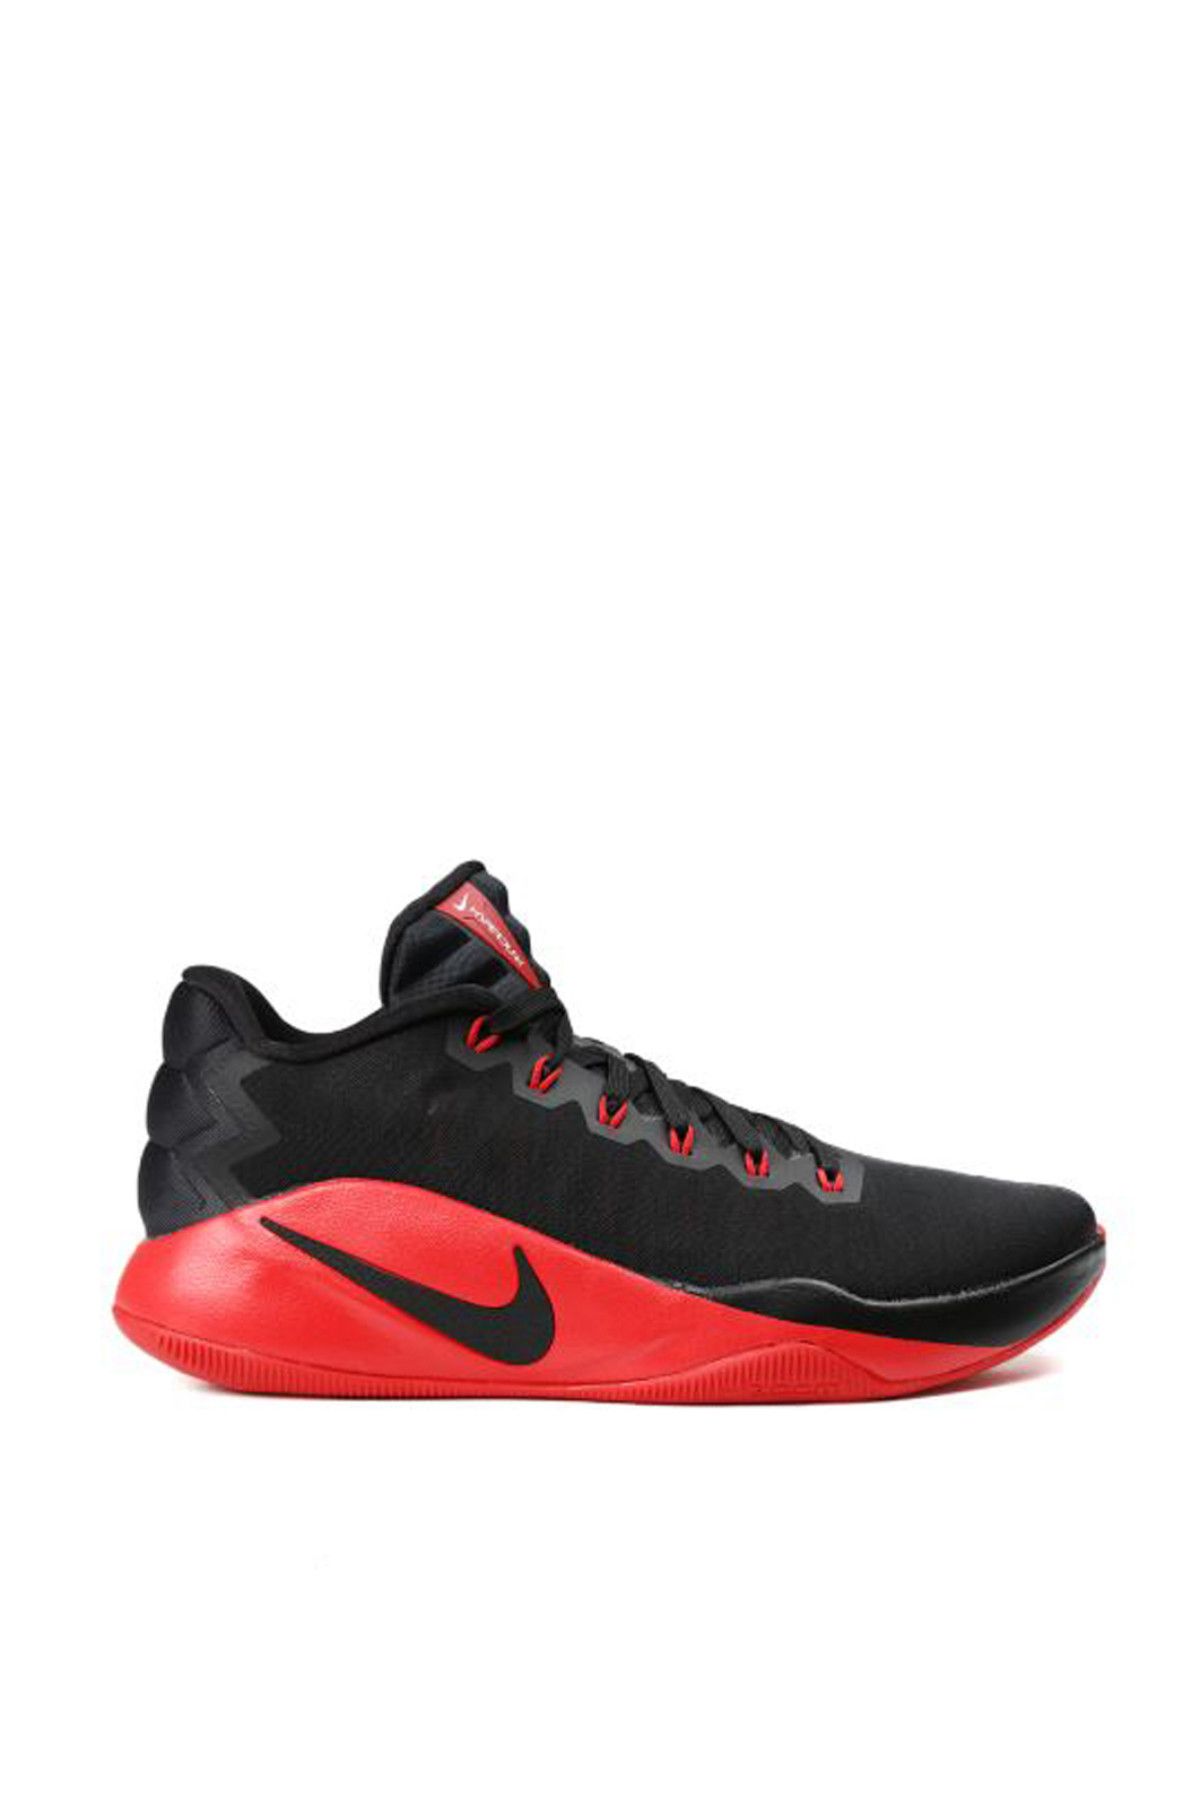 Nike Hyperdunk 2016 Low Basketbol Ayakkabısı - 844363-060